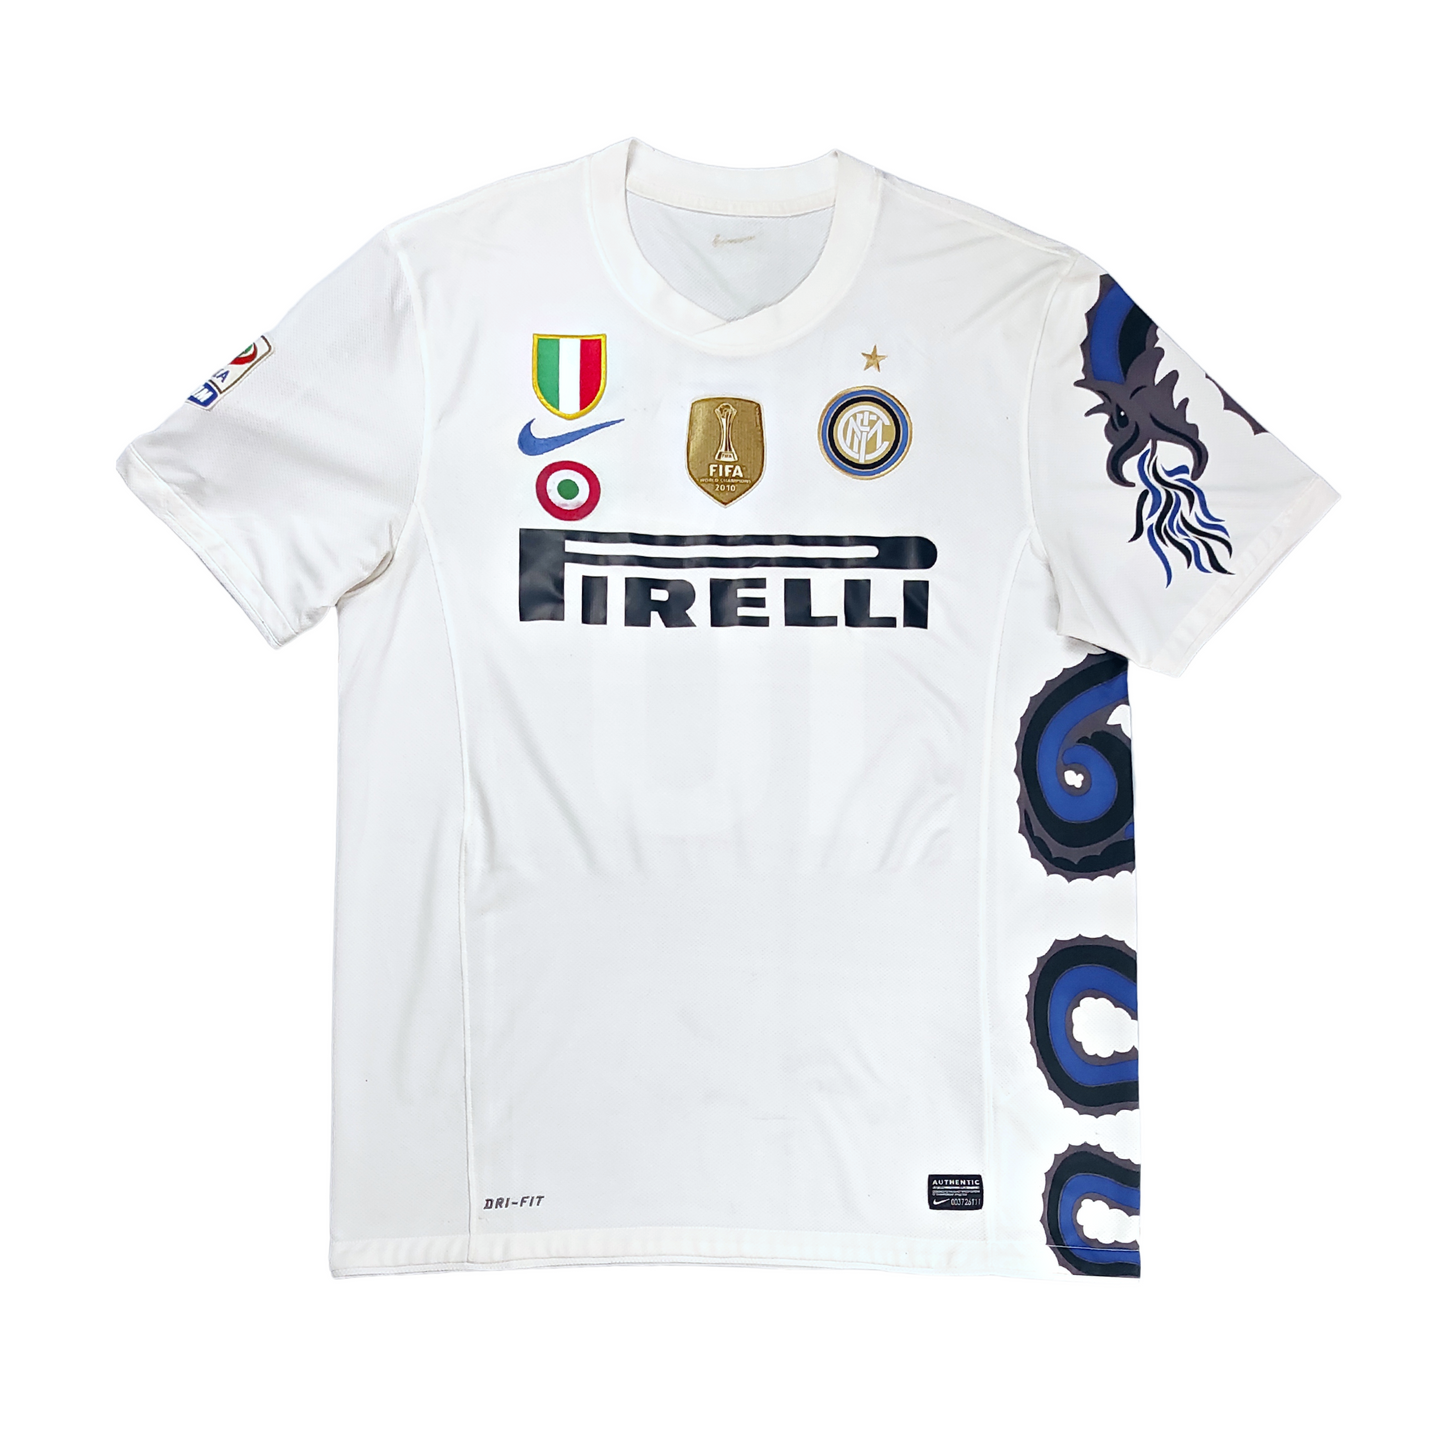 Inter Away Shirt 2010-2011 Sneijder (L)